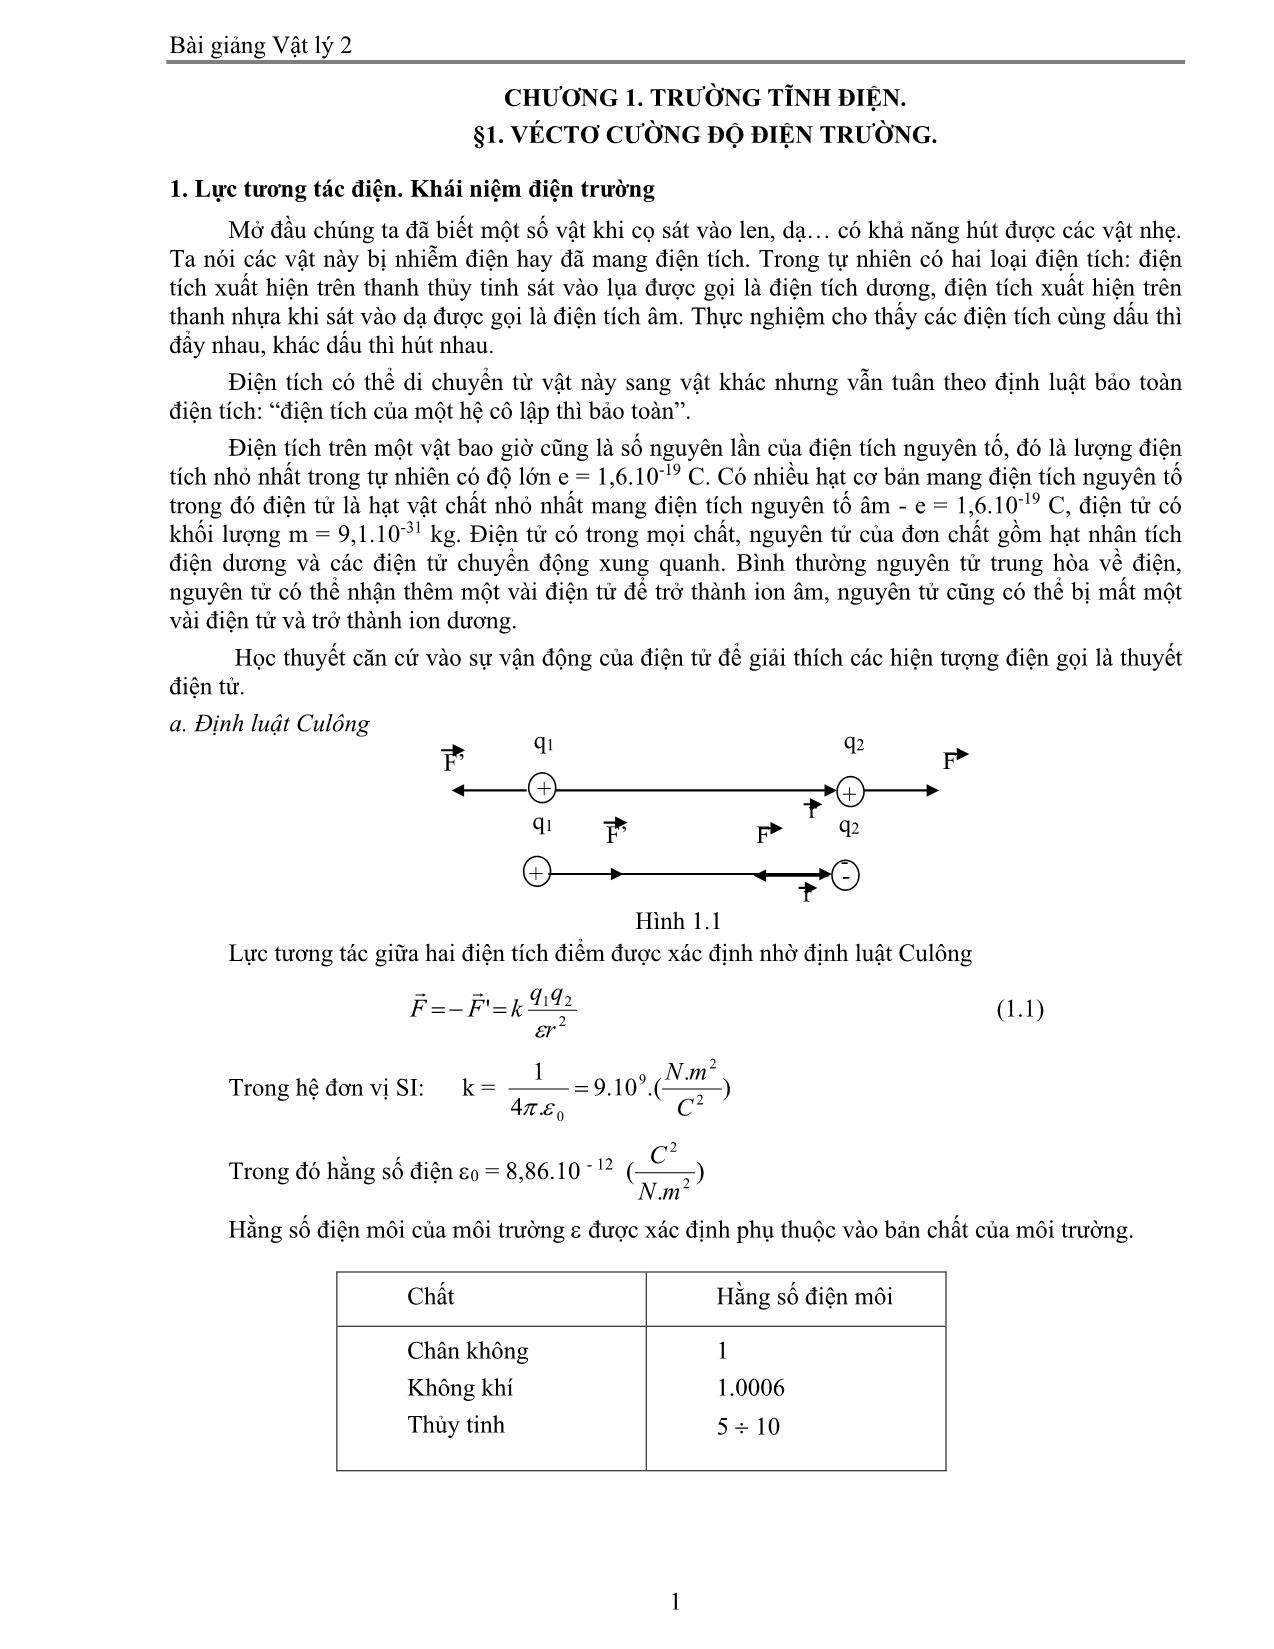 Giáo trình Vật lý 2 trang 1